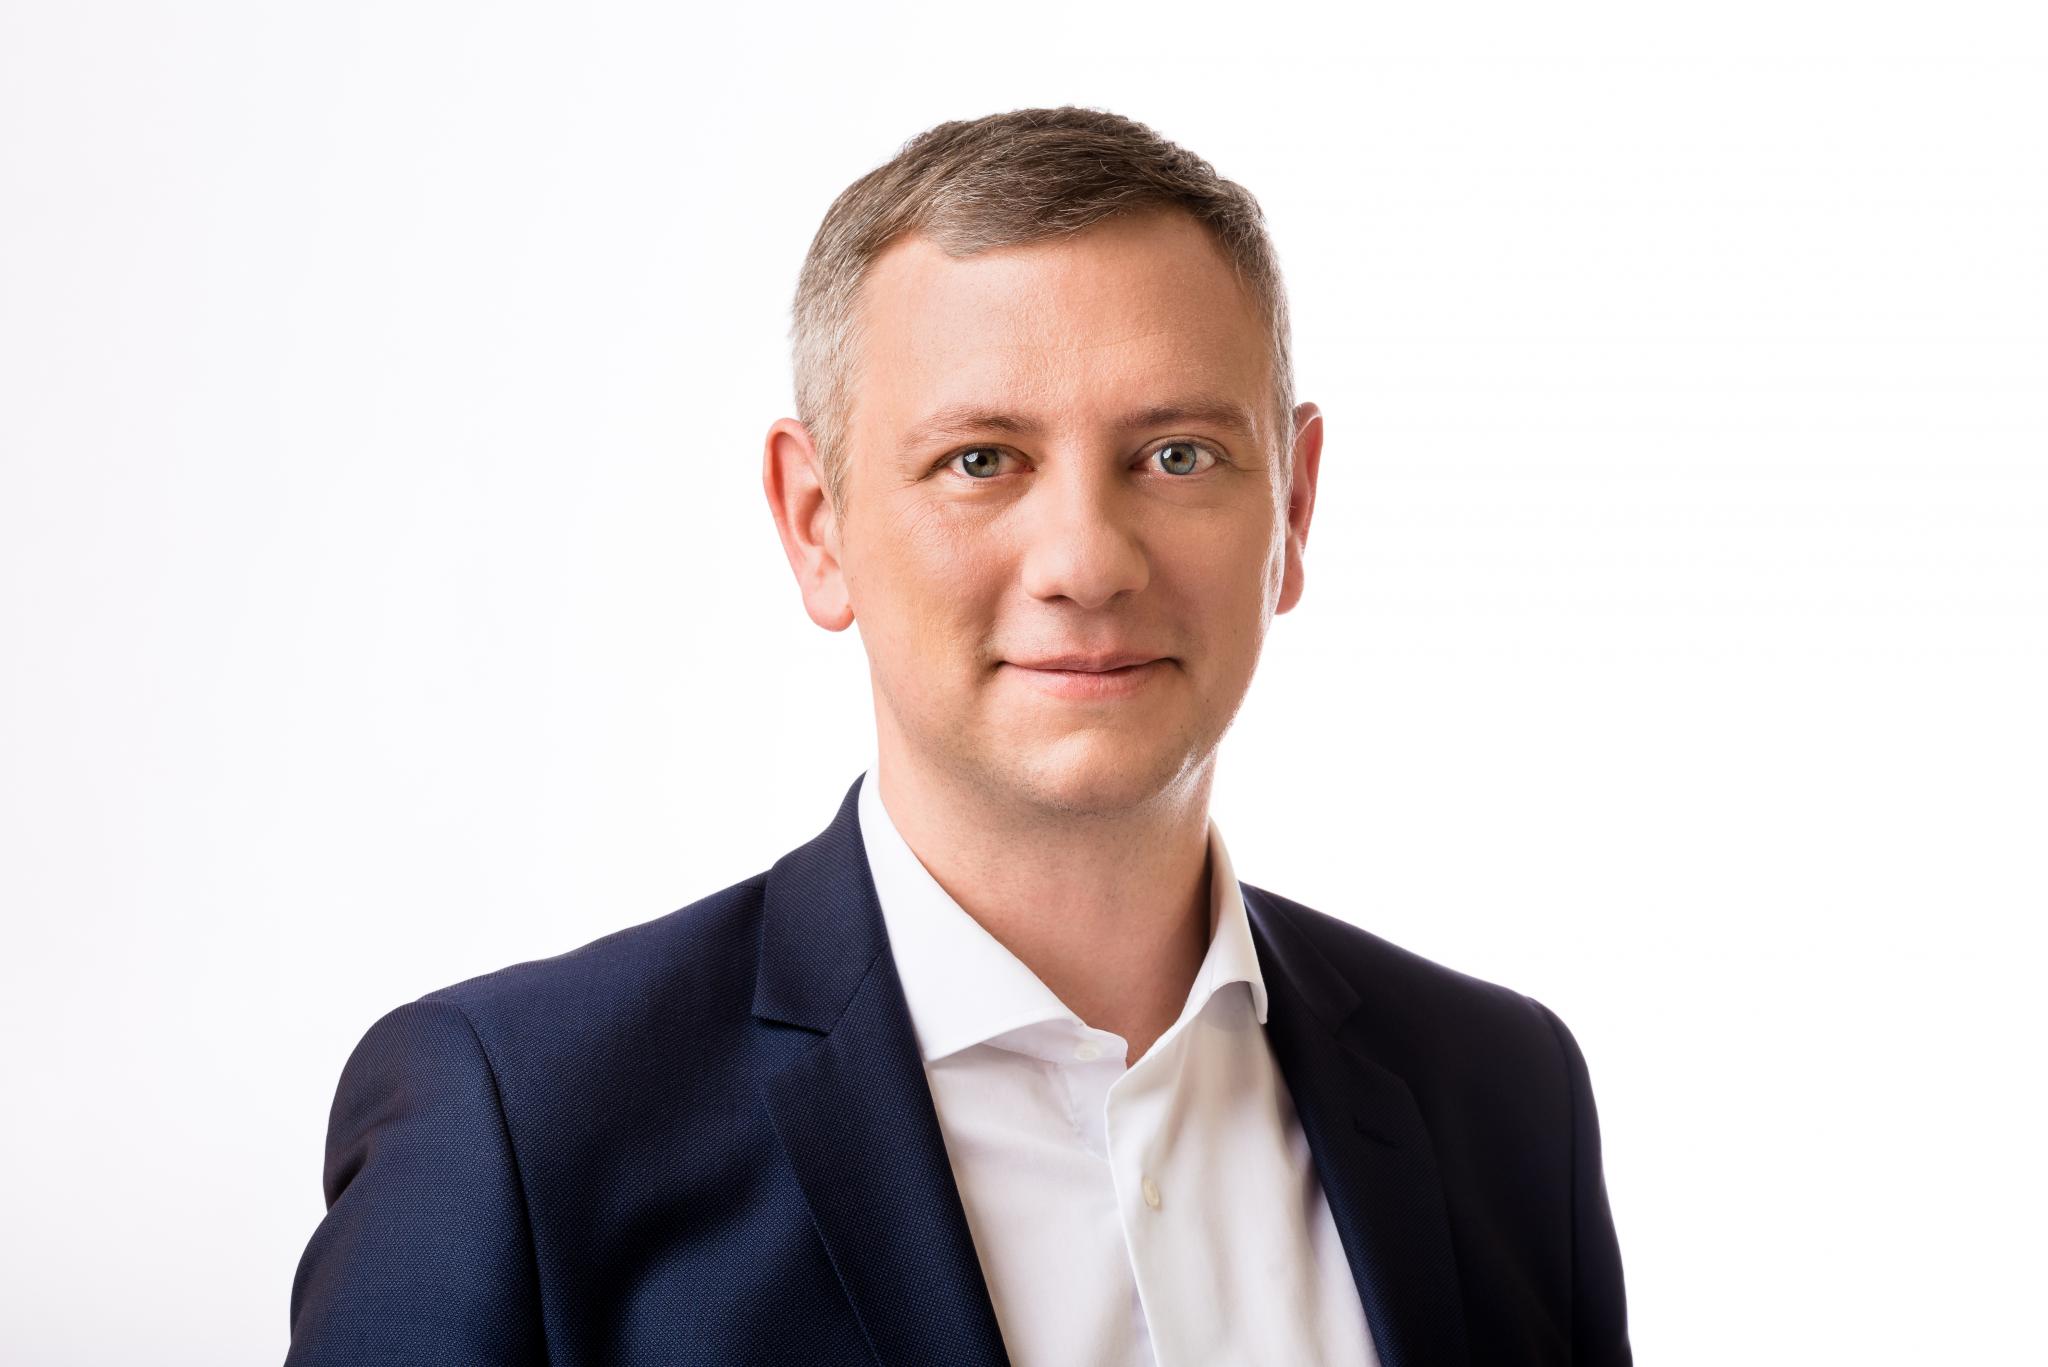 Moritz Promny | Freie Demokraten im Hessischen Landtag